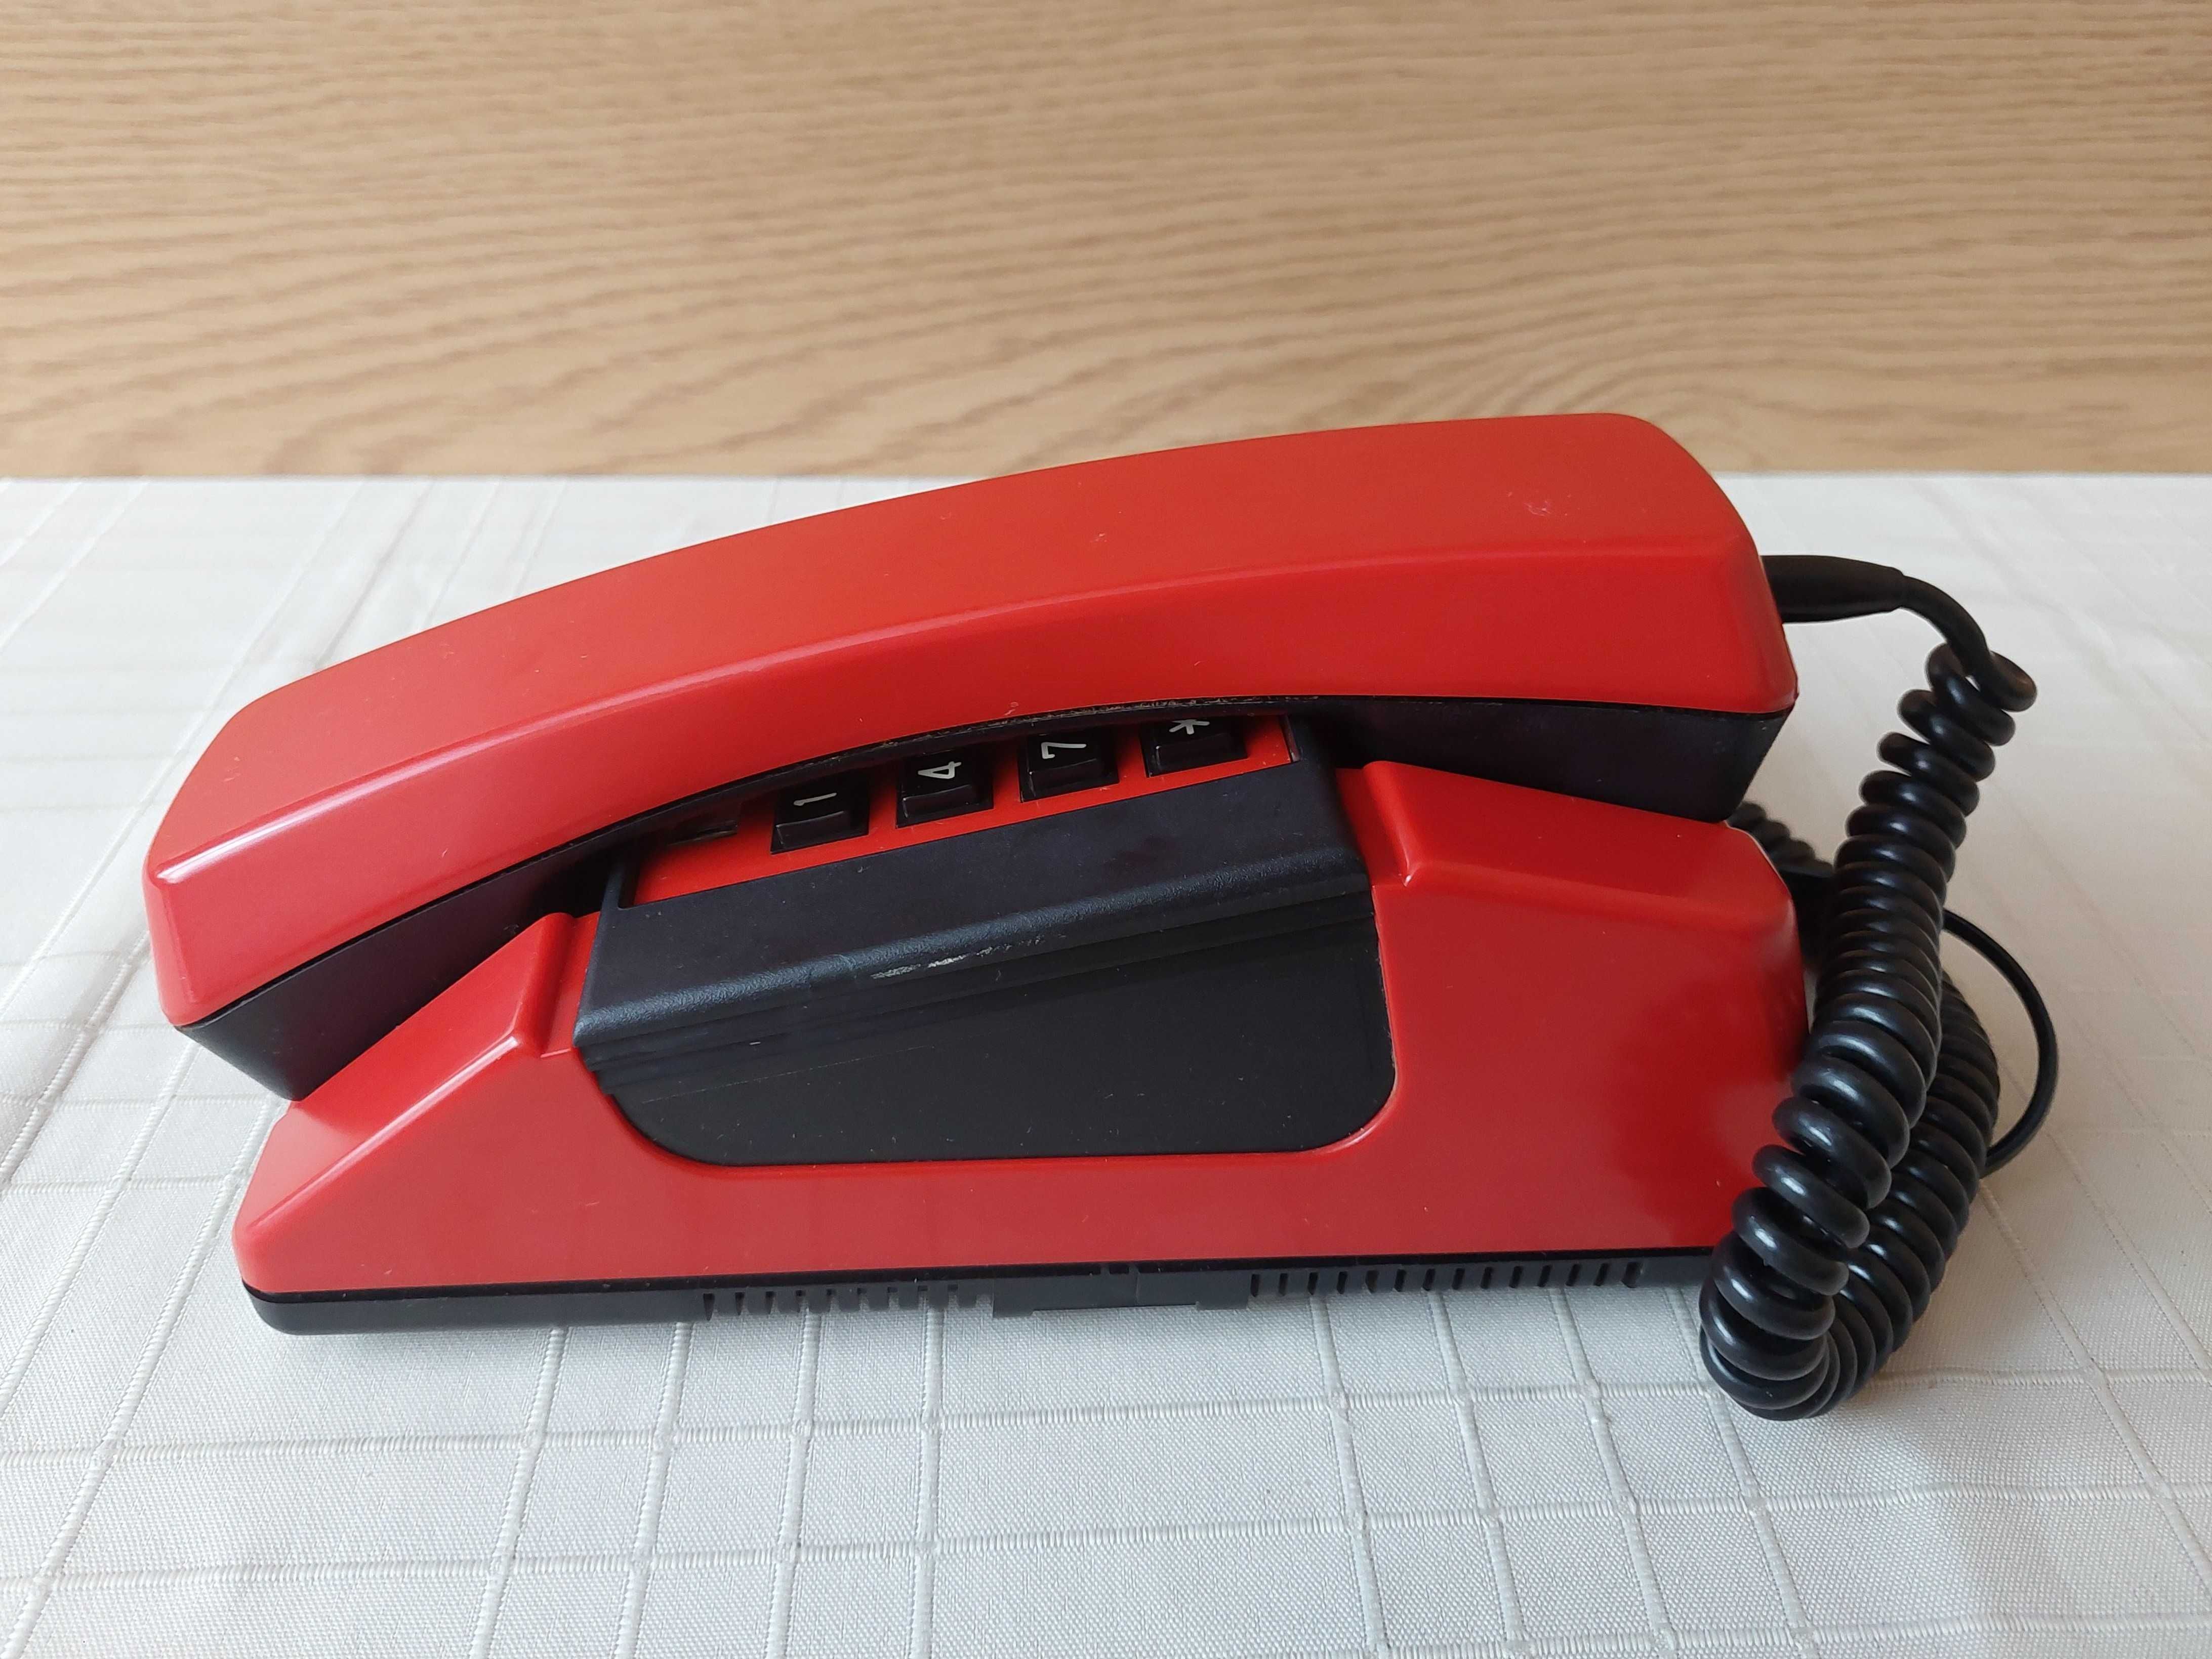 Telefon stacjonarny - Bratek 324A (czerwony)